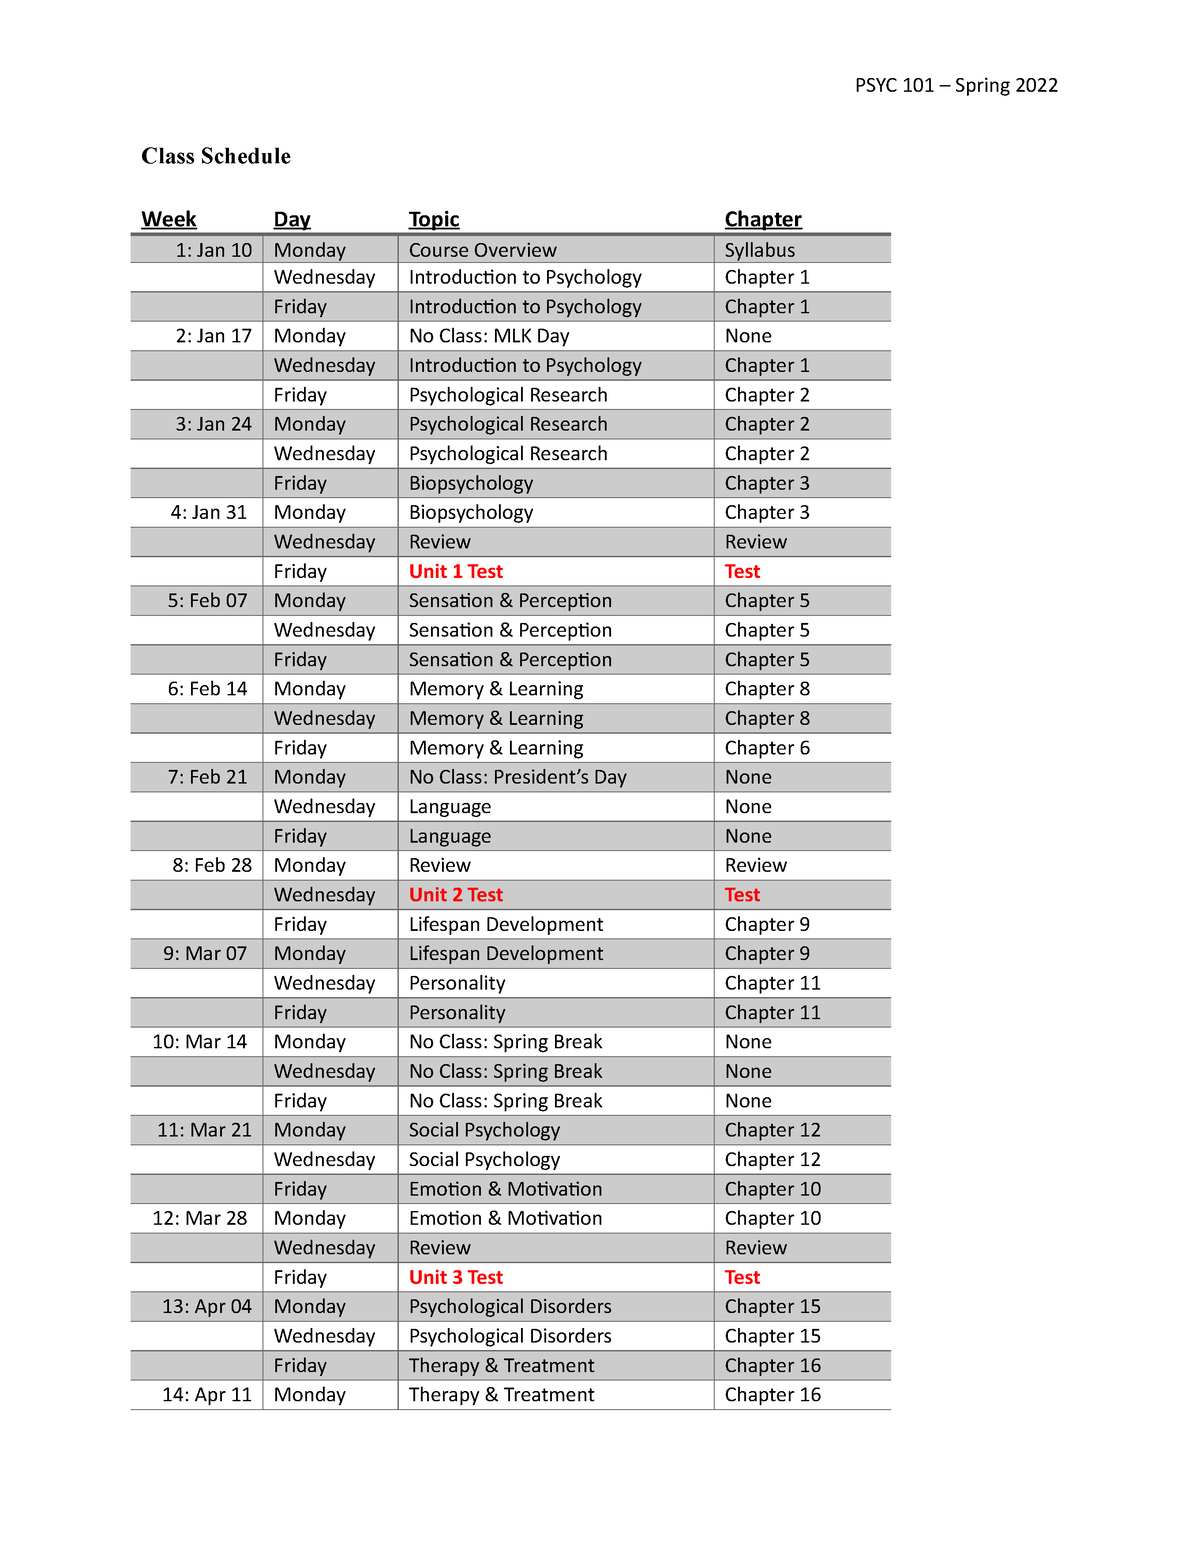 PSYC 101 - Class Schedule-2 - PSYC 101 – Spring 2022 Class Schedule